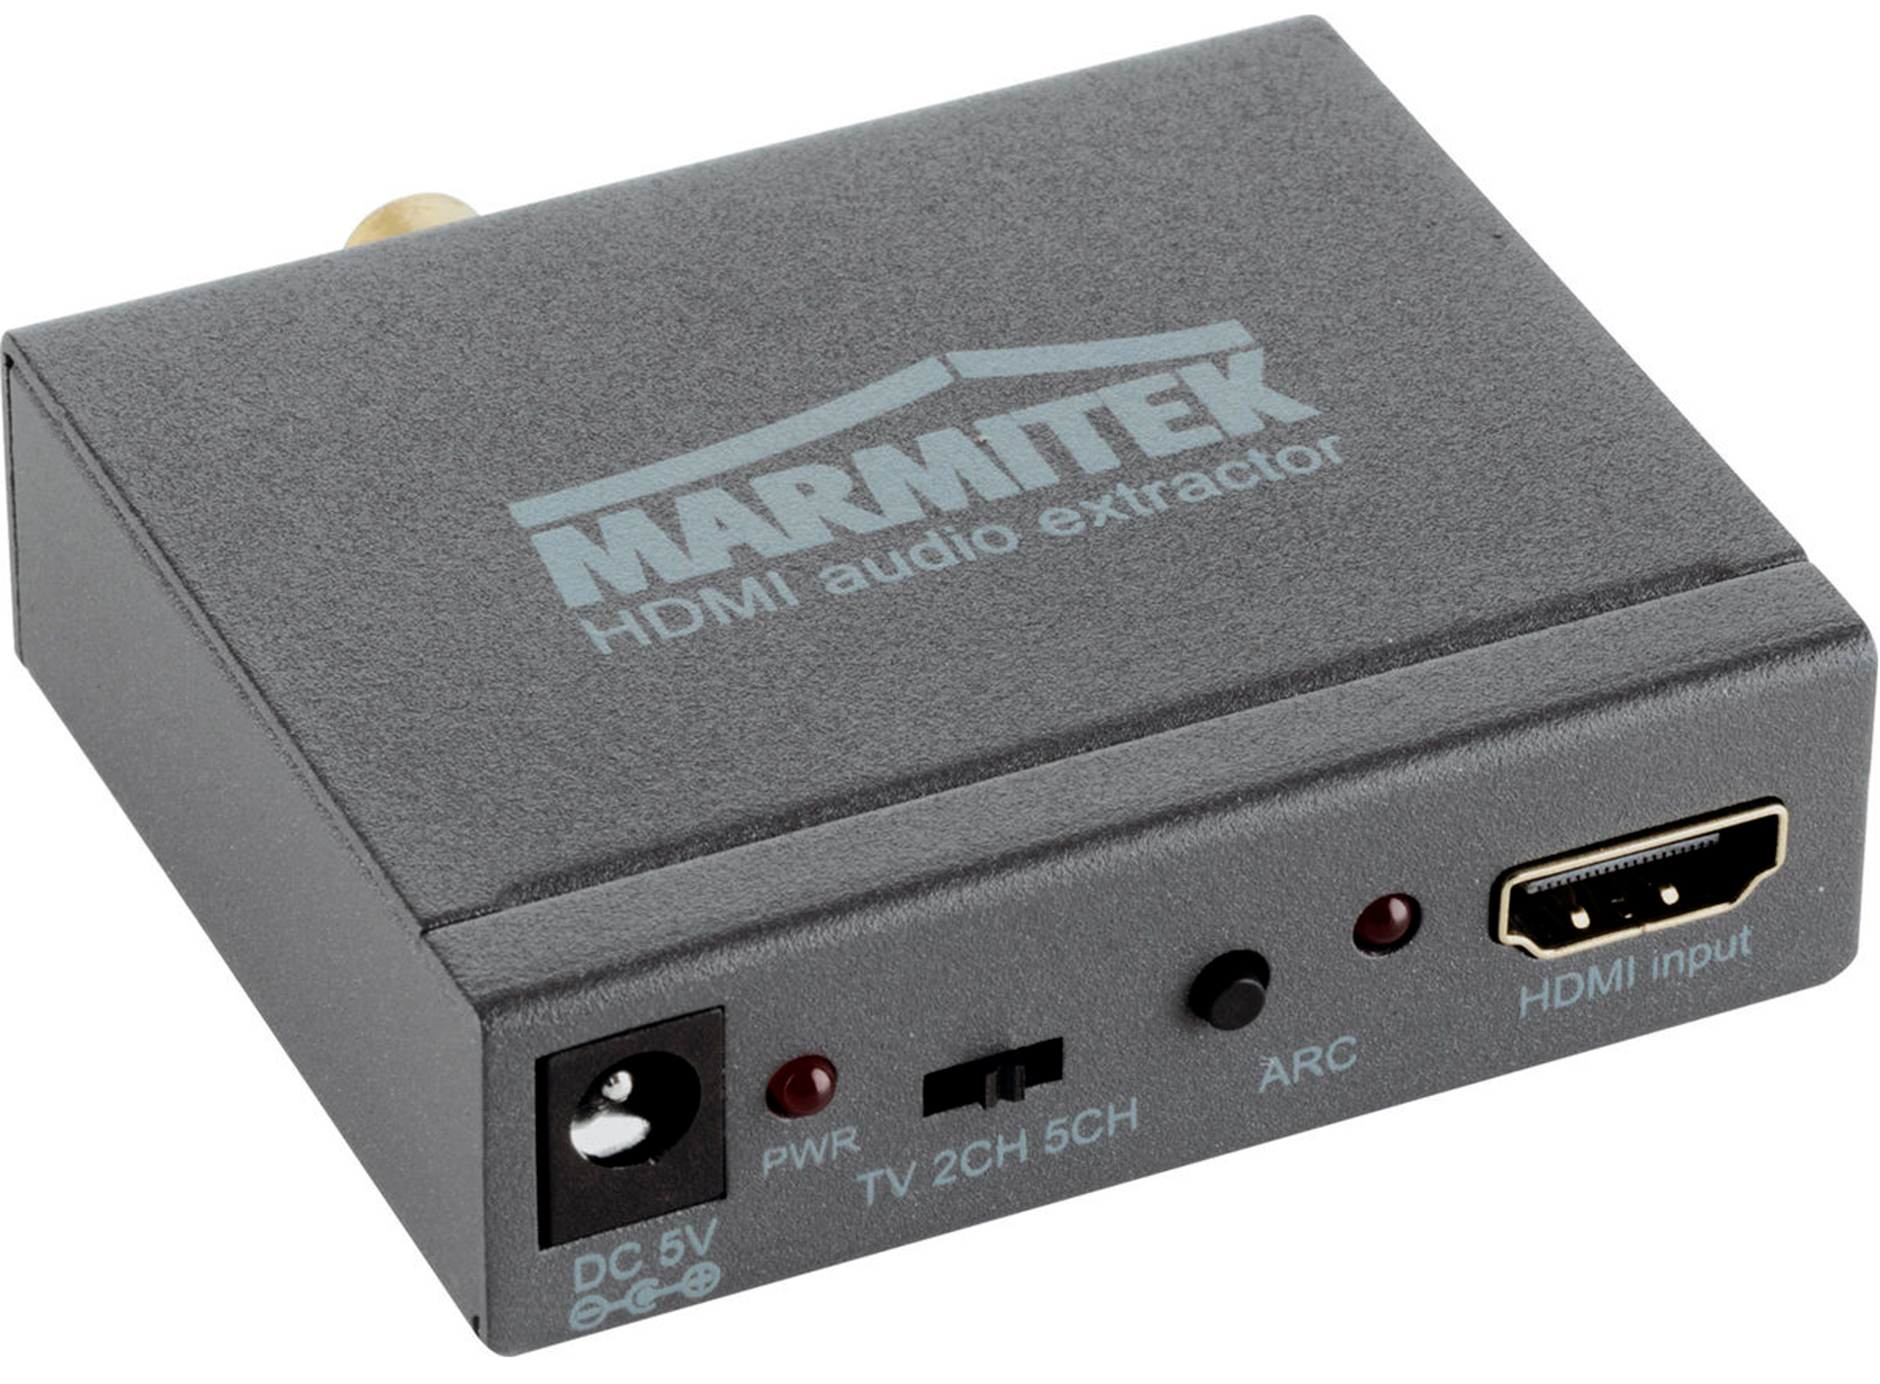 Marmitek Connect 621 UHD 2.0 - Switch HDMI - La boutique d'Eric